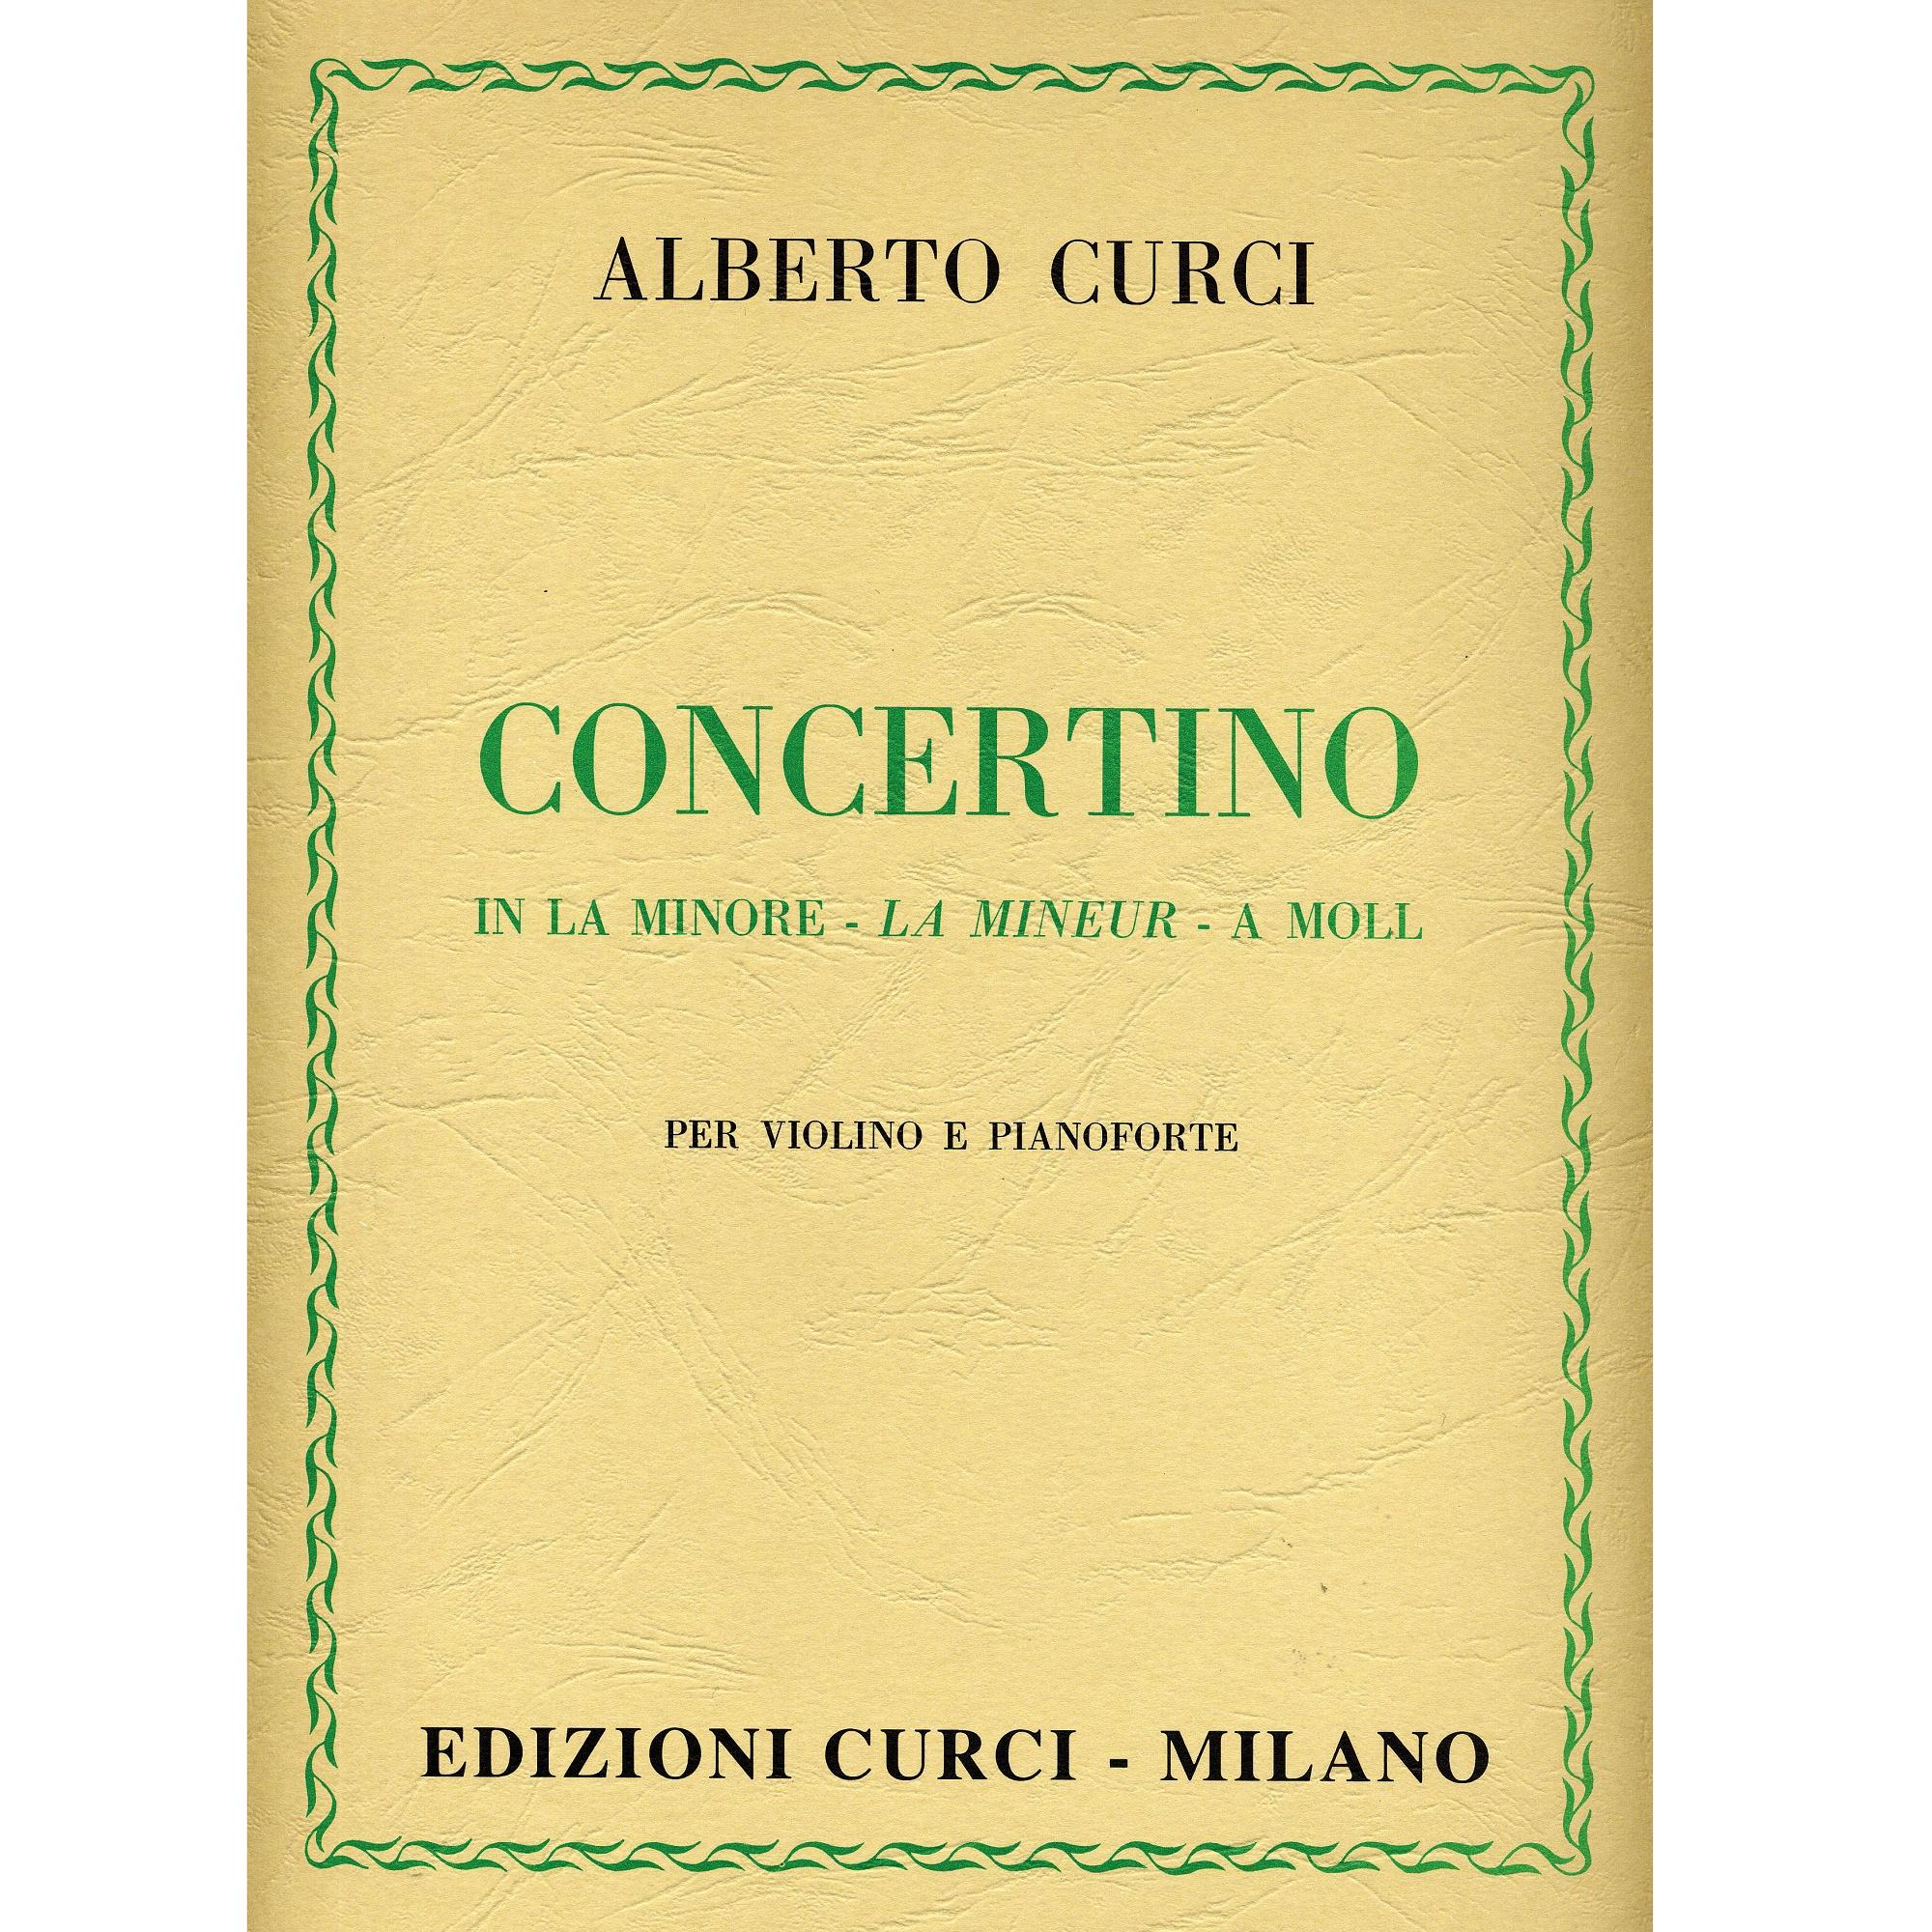 Curci Concertino in La Minore - La Mineur - A Moll per violino e pianoforte - Edizioni Curci Milano